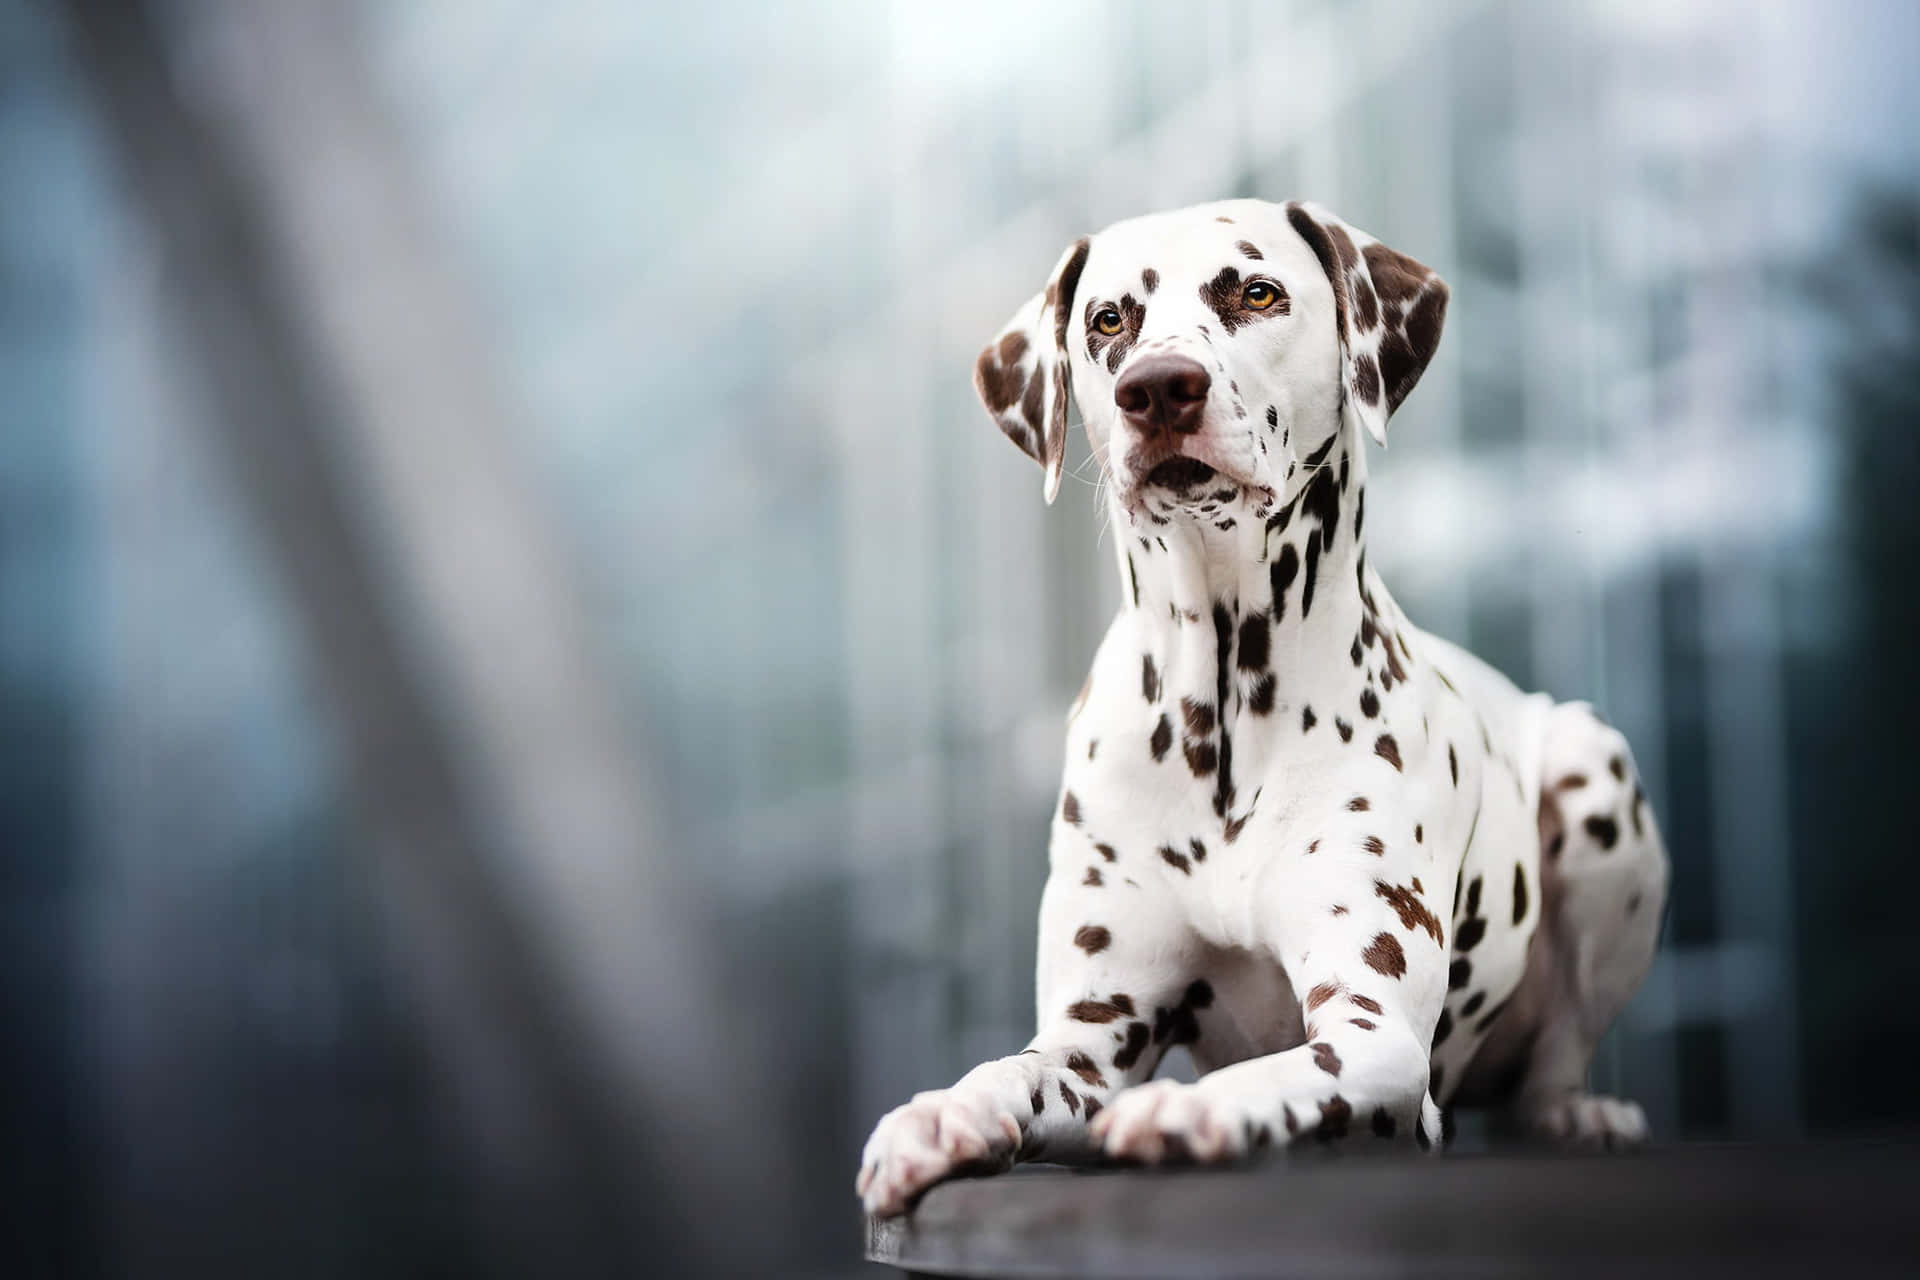 An Adorable Dalmatian Puppy